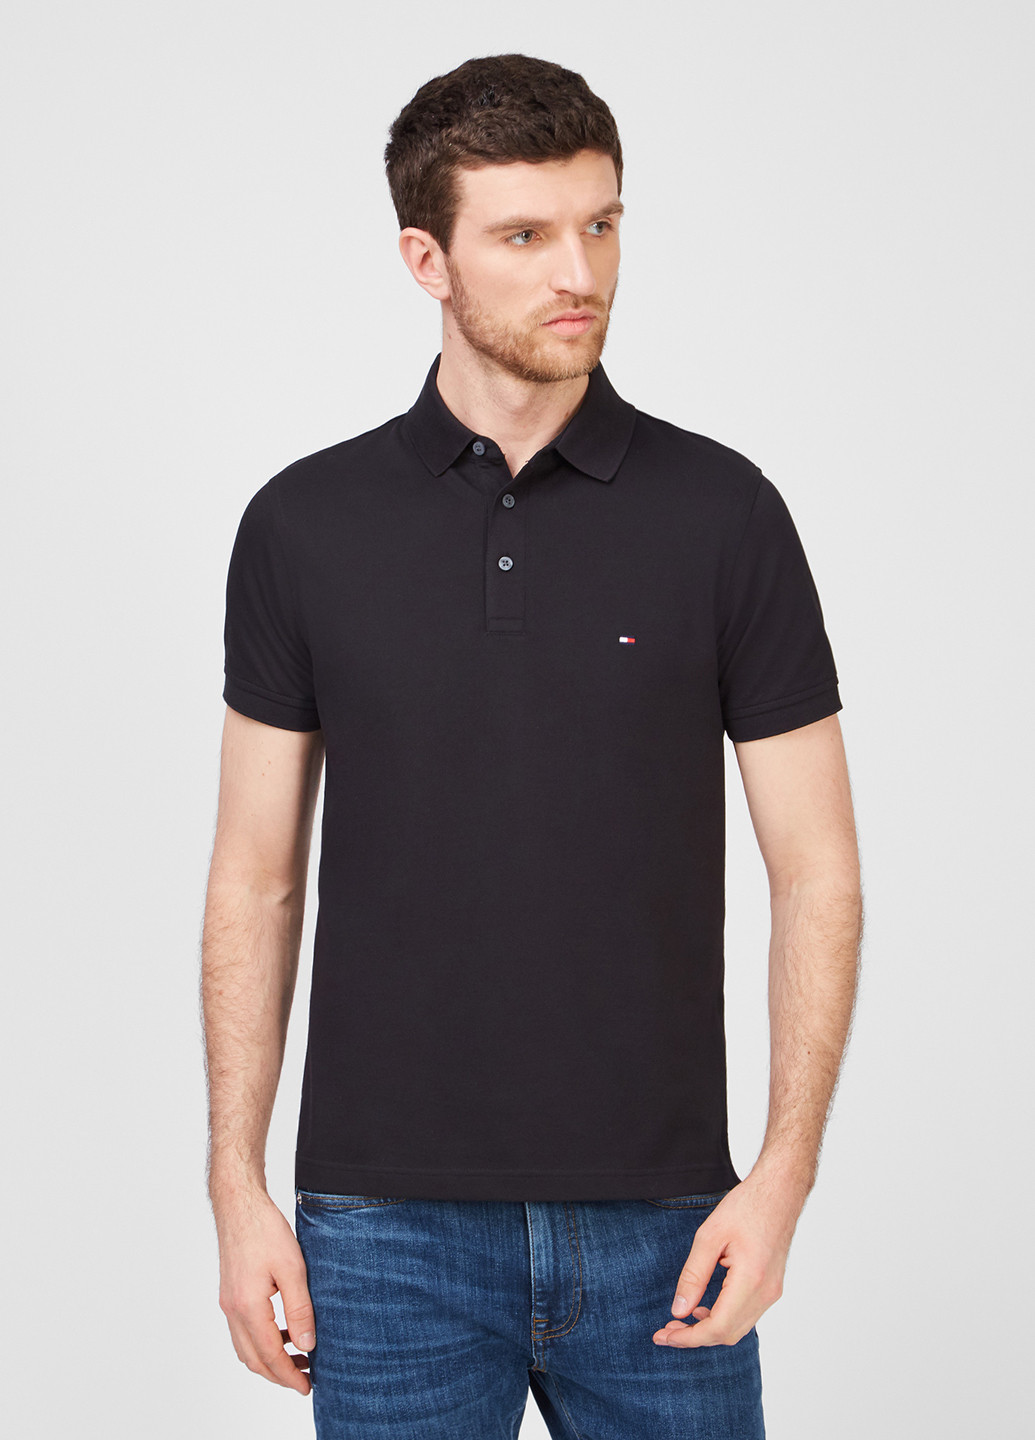 Черная футболка-поло для мужчин Tommy Hilfiger однотонная